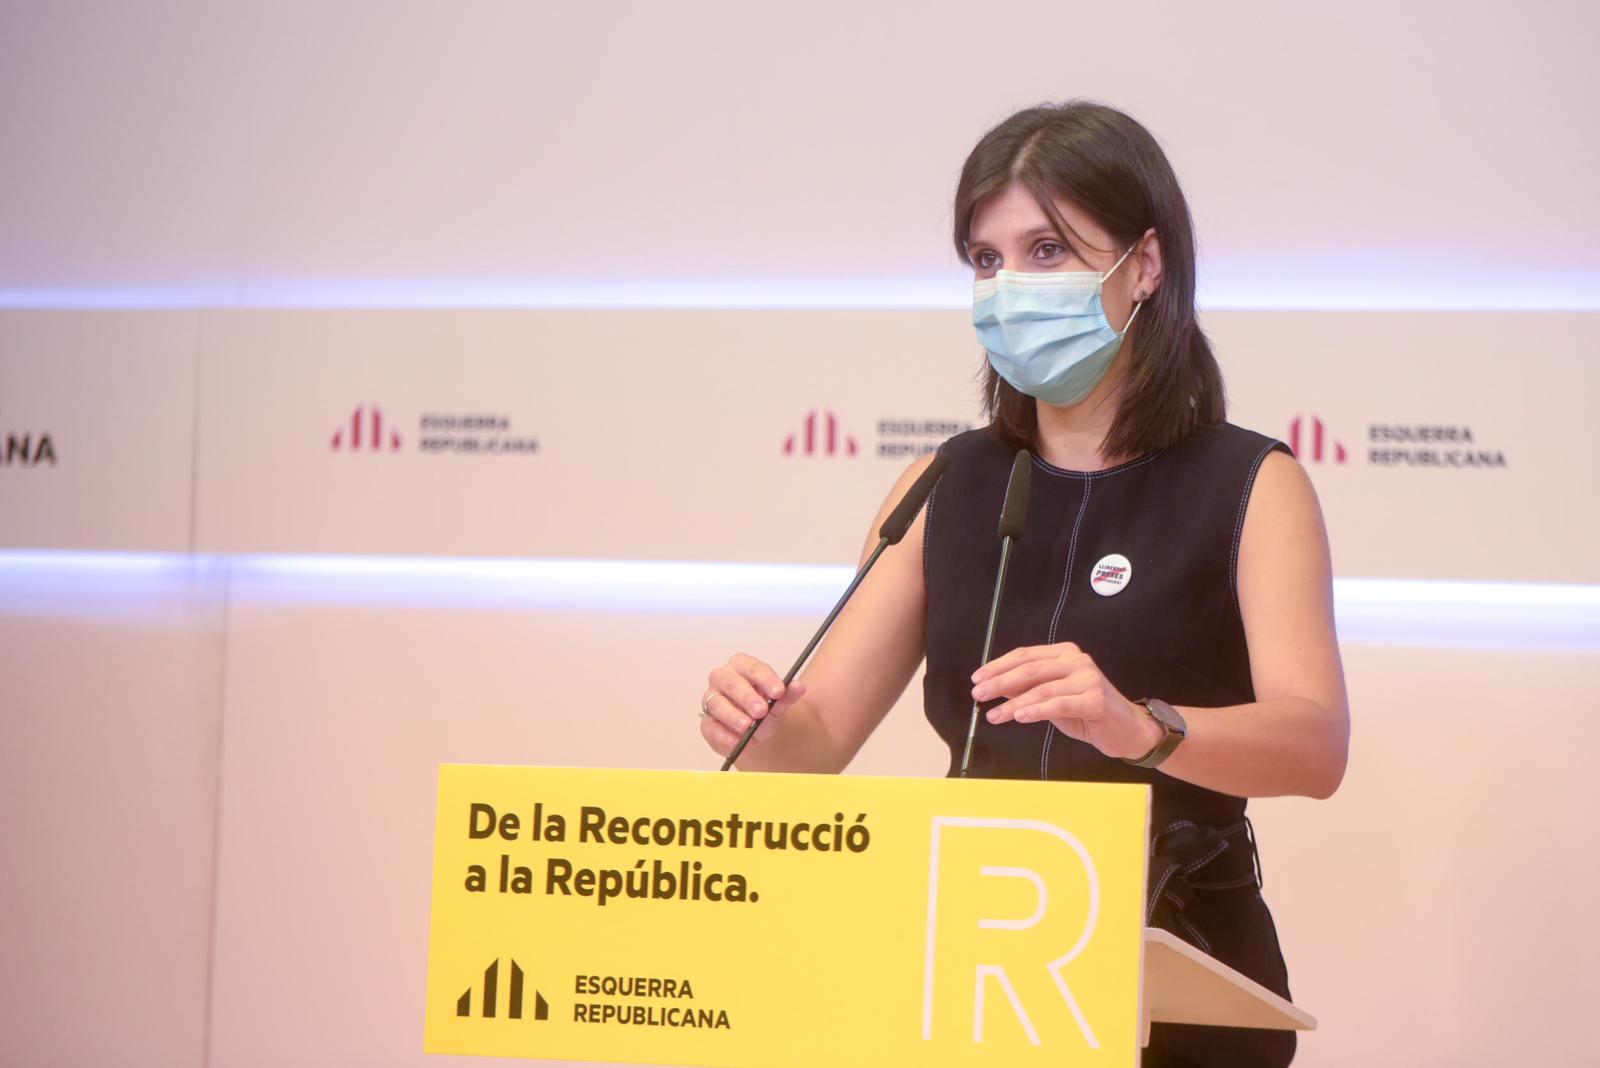 ERC evita comentar el libro de Puigdemont: "No queremos generar más reproches"